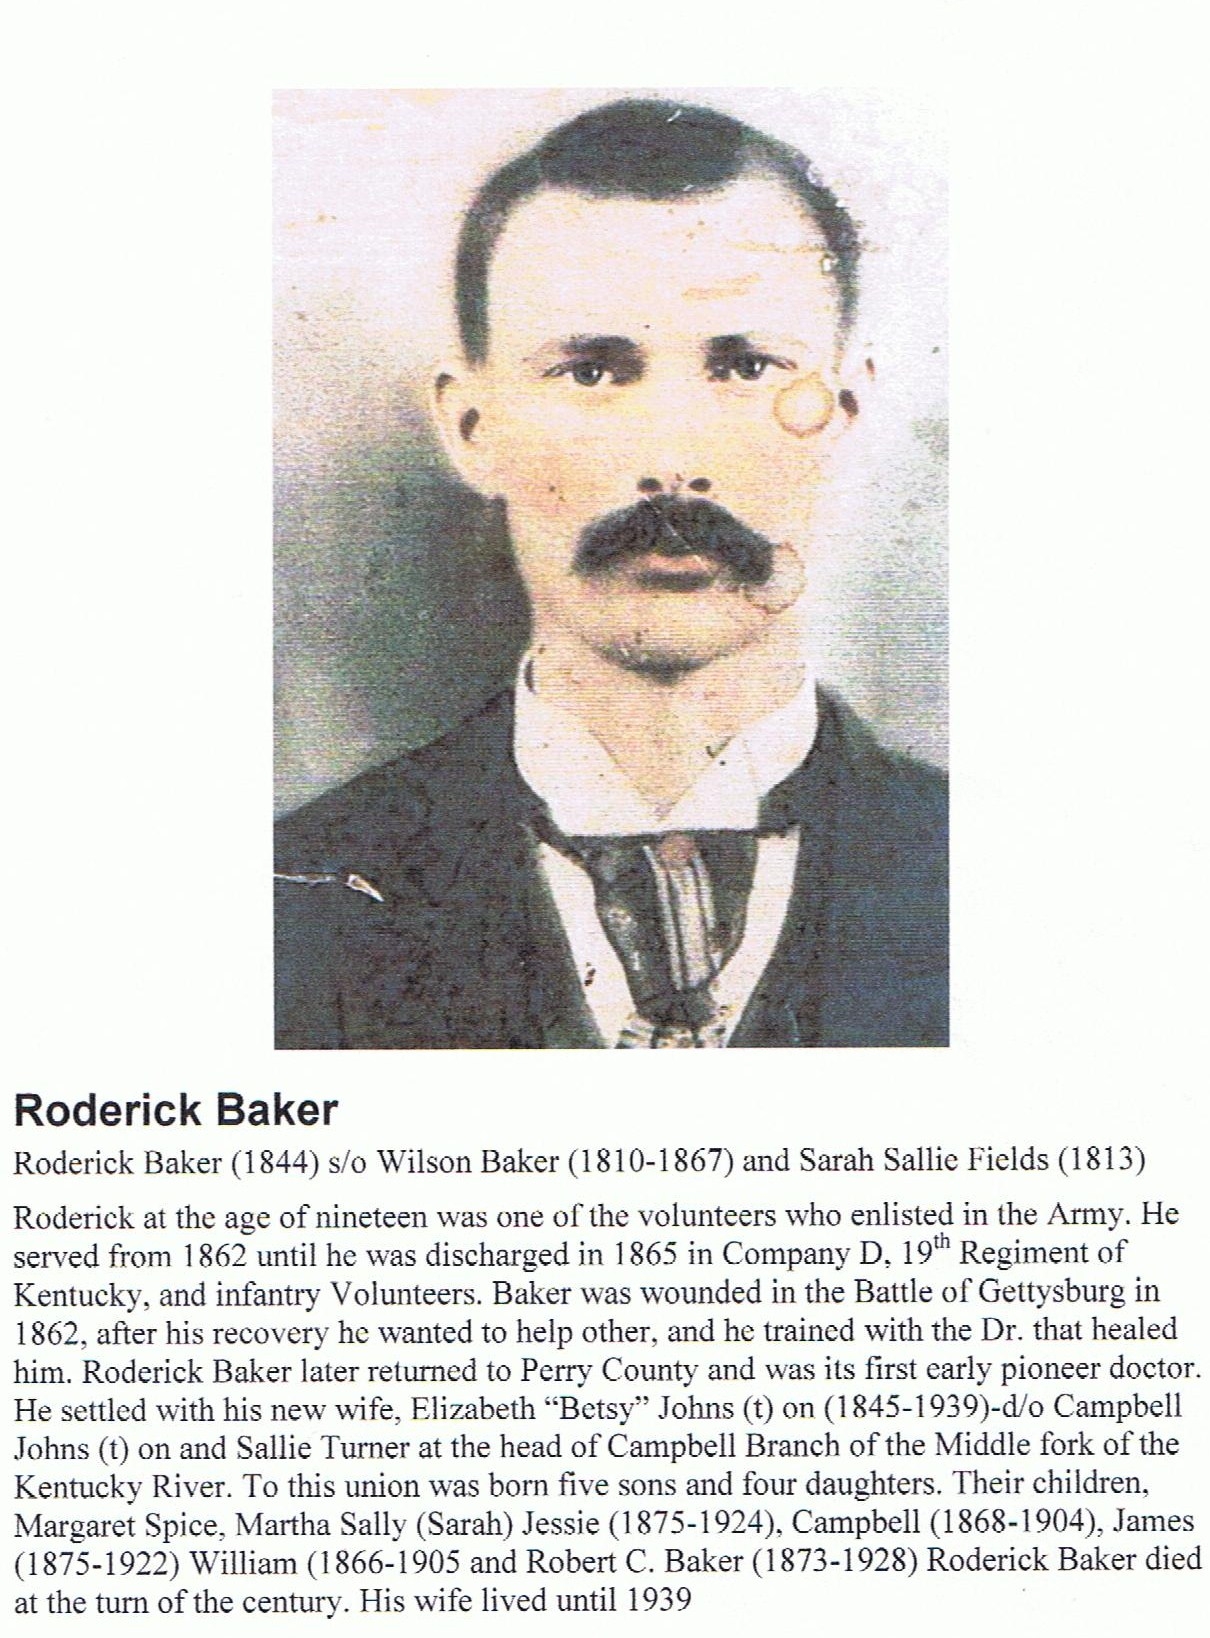 Dr. Rodrick Baker